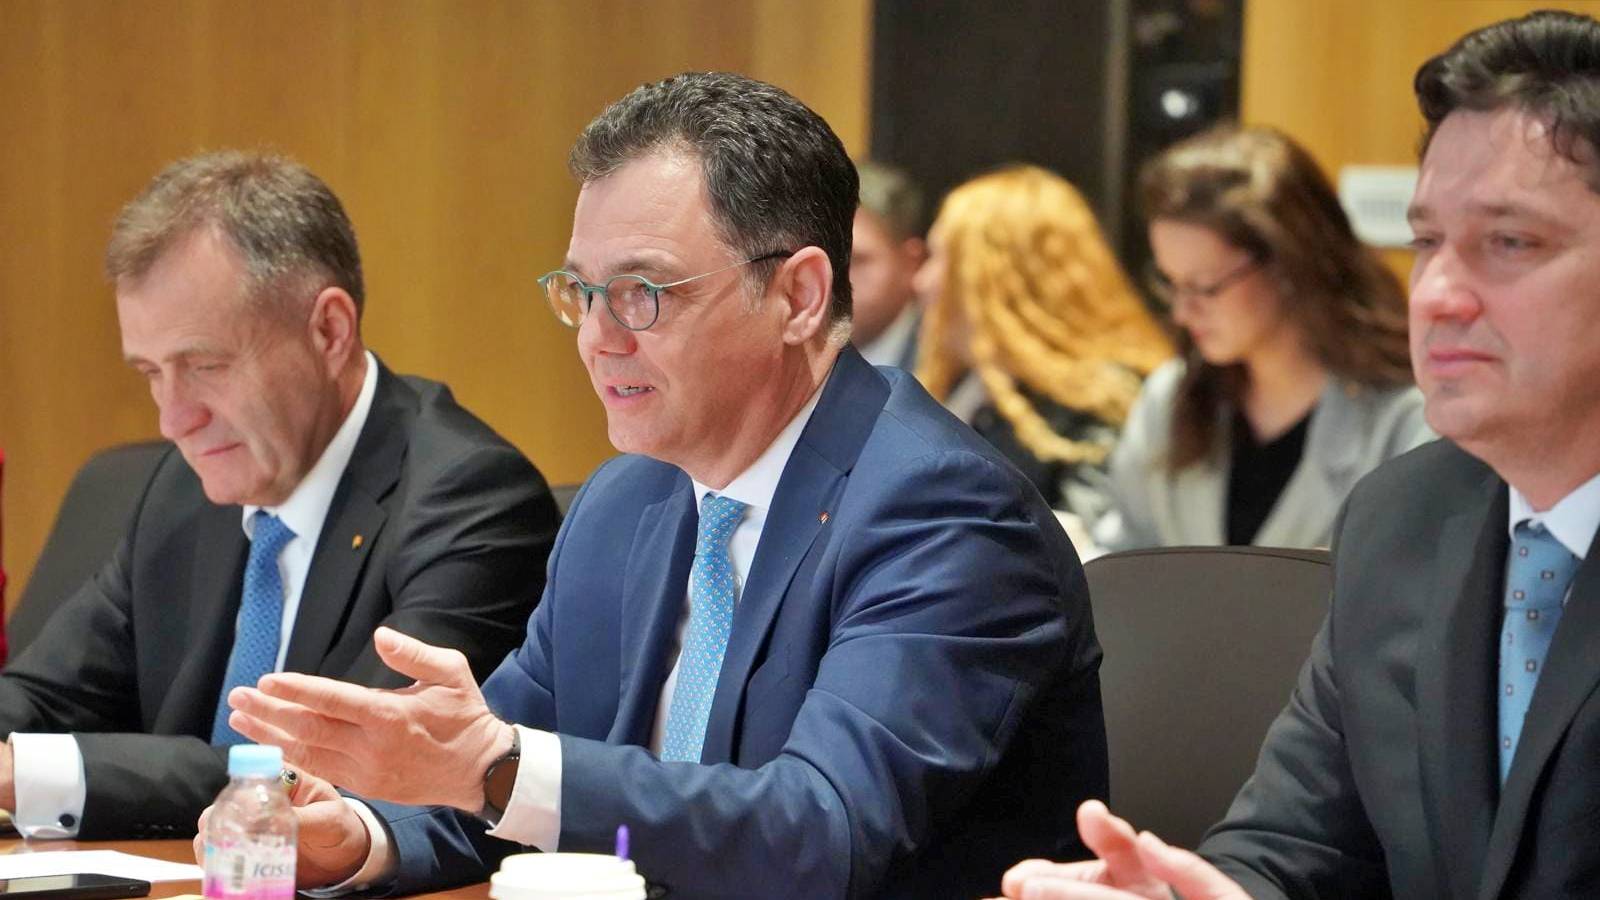 Økonomiminister Officielt møde SIDSTE ØJEBLIK Foranstaltninger MILLIONER Rumænere Land